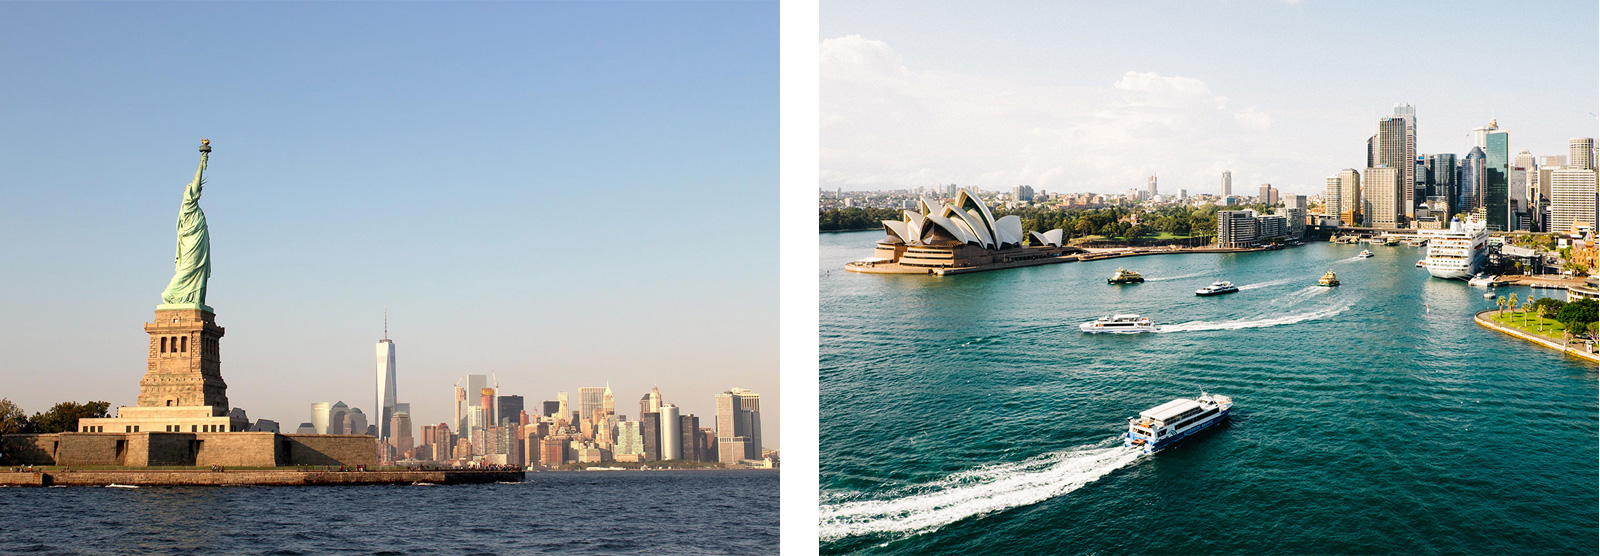 Klassische Ziele für Auswanderer: USA und Australien (Foto rechts: Sidney)